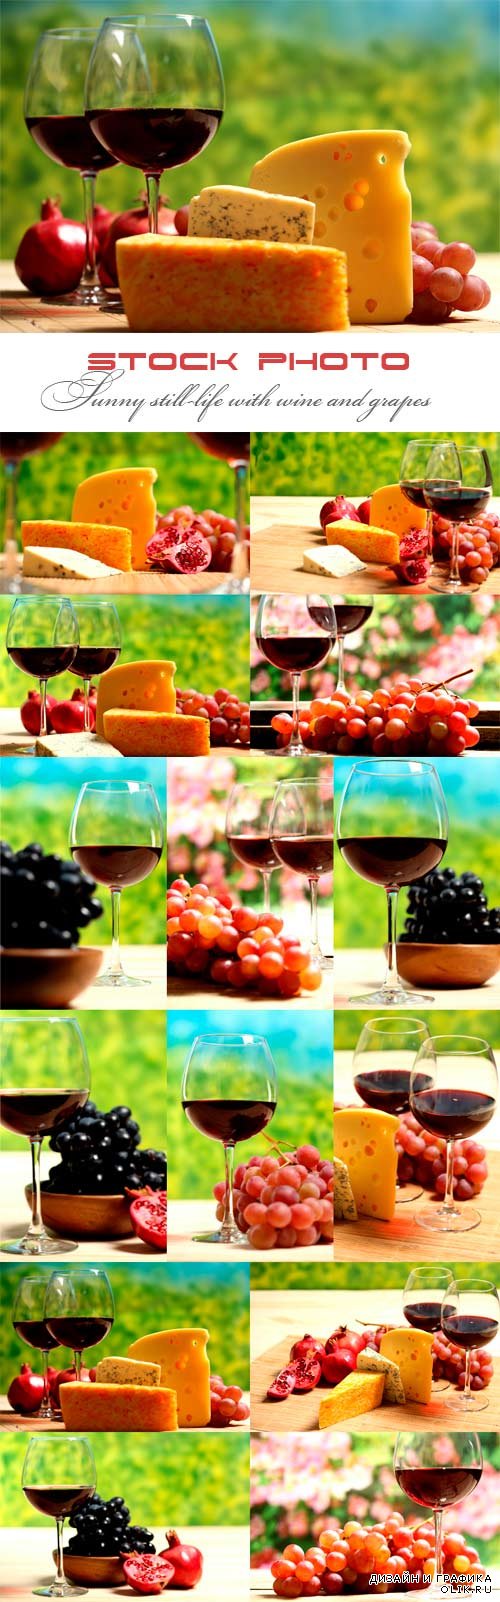 Солнечный натюрморт с вином и виноградом